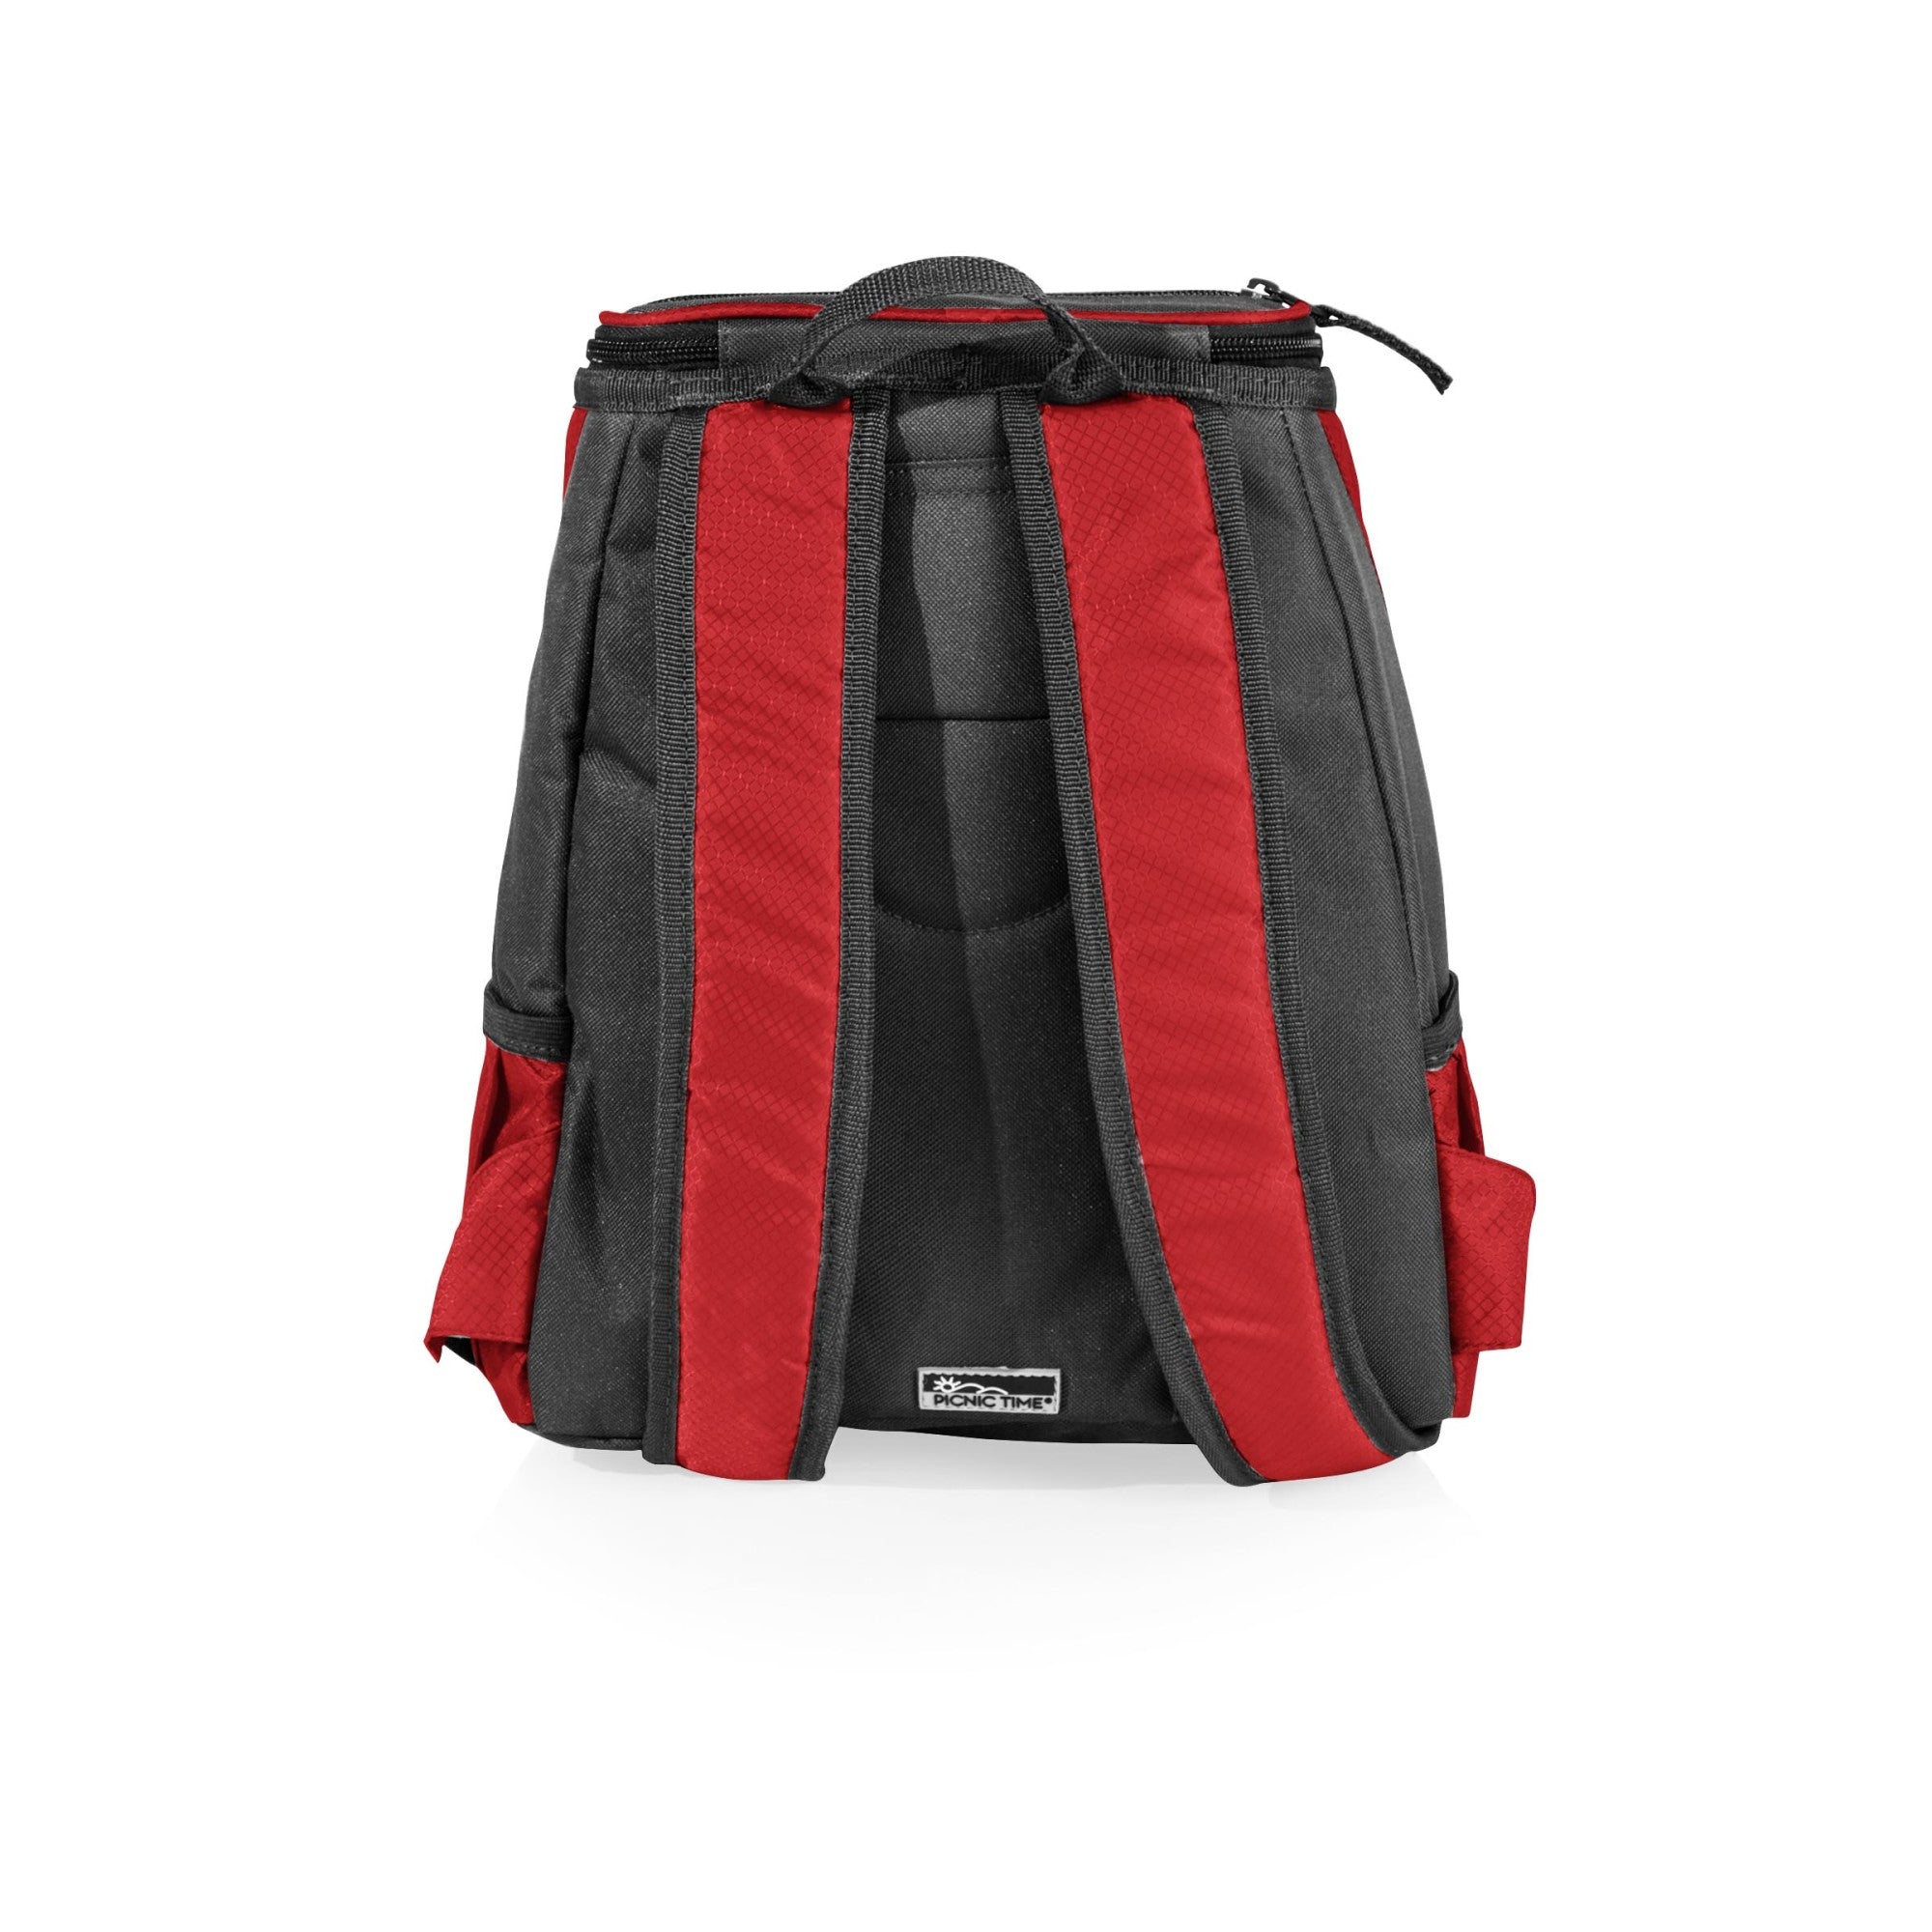 New York Giants - PTX Backpack Cooler